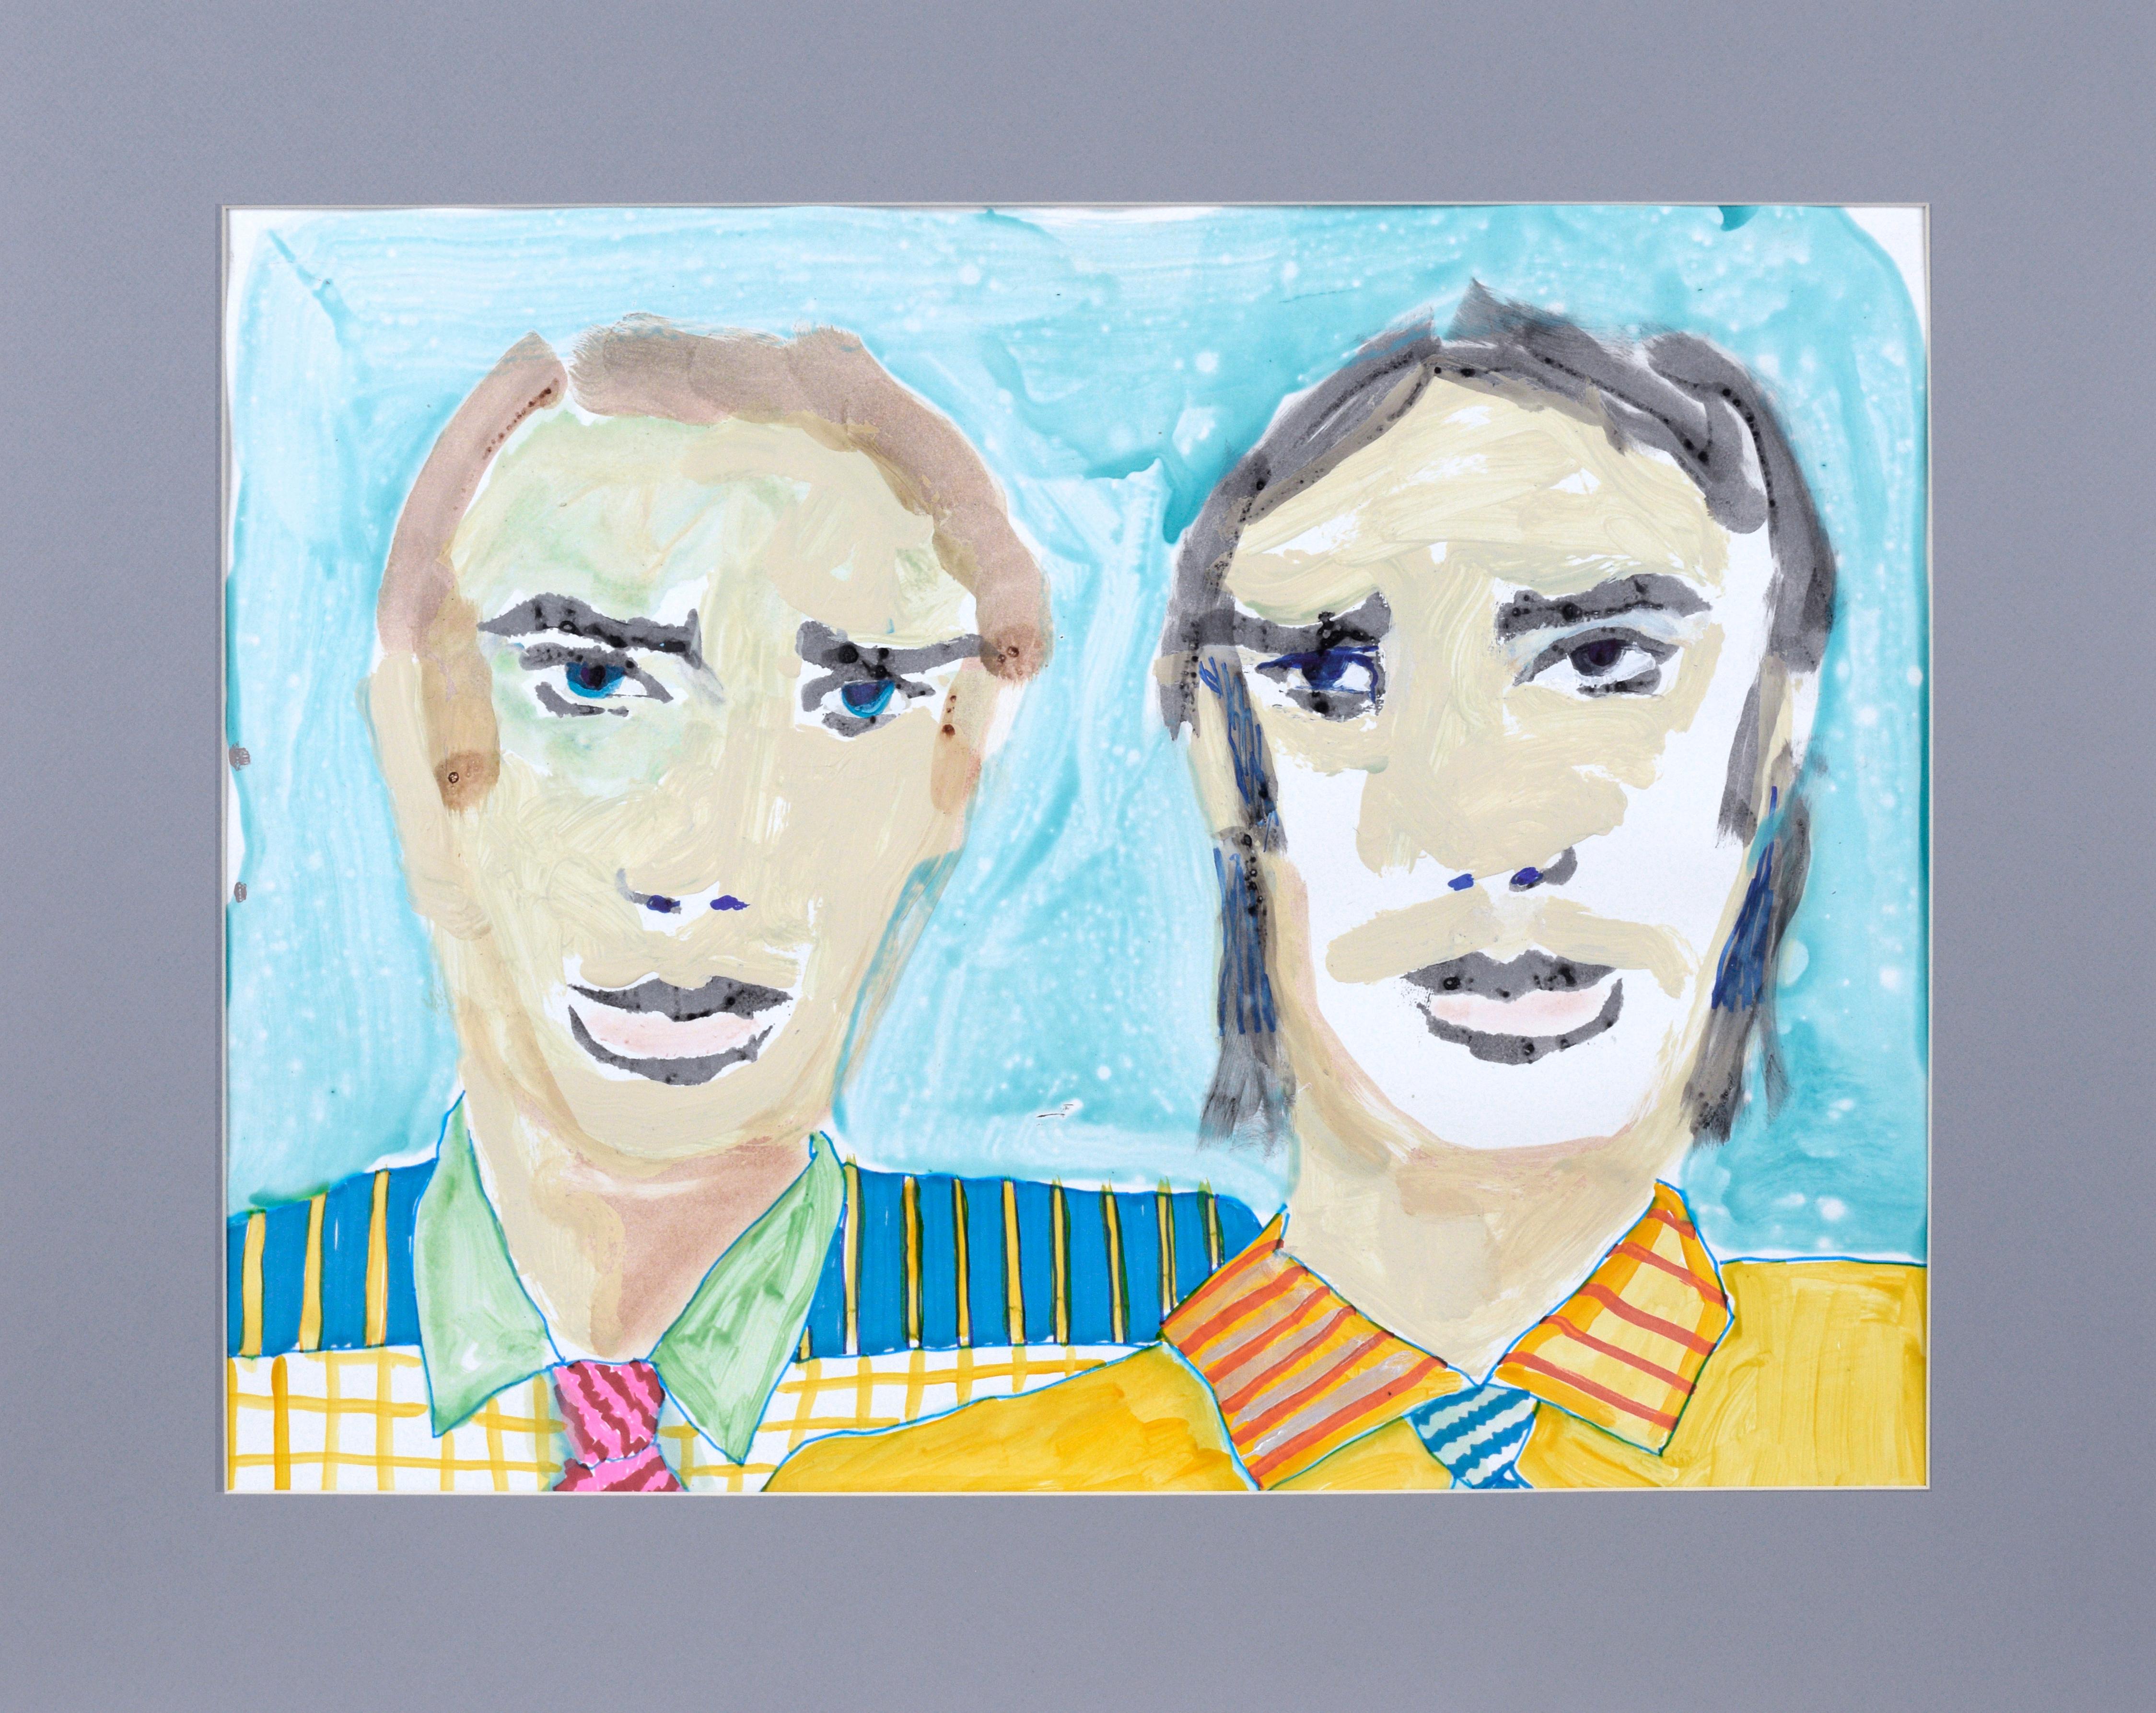 Wenn Wes Anderson Marc Foster Grant kennenlernte – Abstrakte Porträts auf Papier

Zwei-Mann-Porträt von Marc Foster Grant (Amerikaner, geb. 1947), in leuchtenden Farben und abstrakten Pinselstrichen. Zwei Männer mit bunt gestreiften und karierten